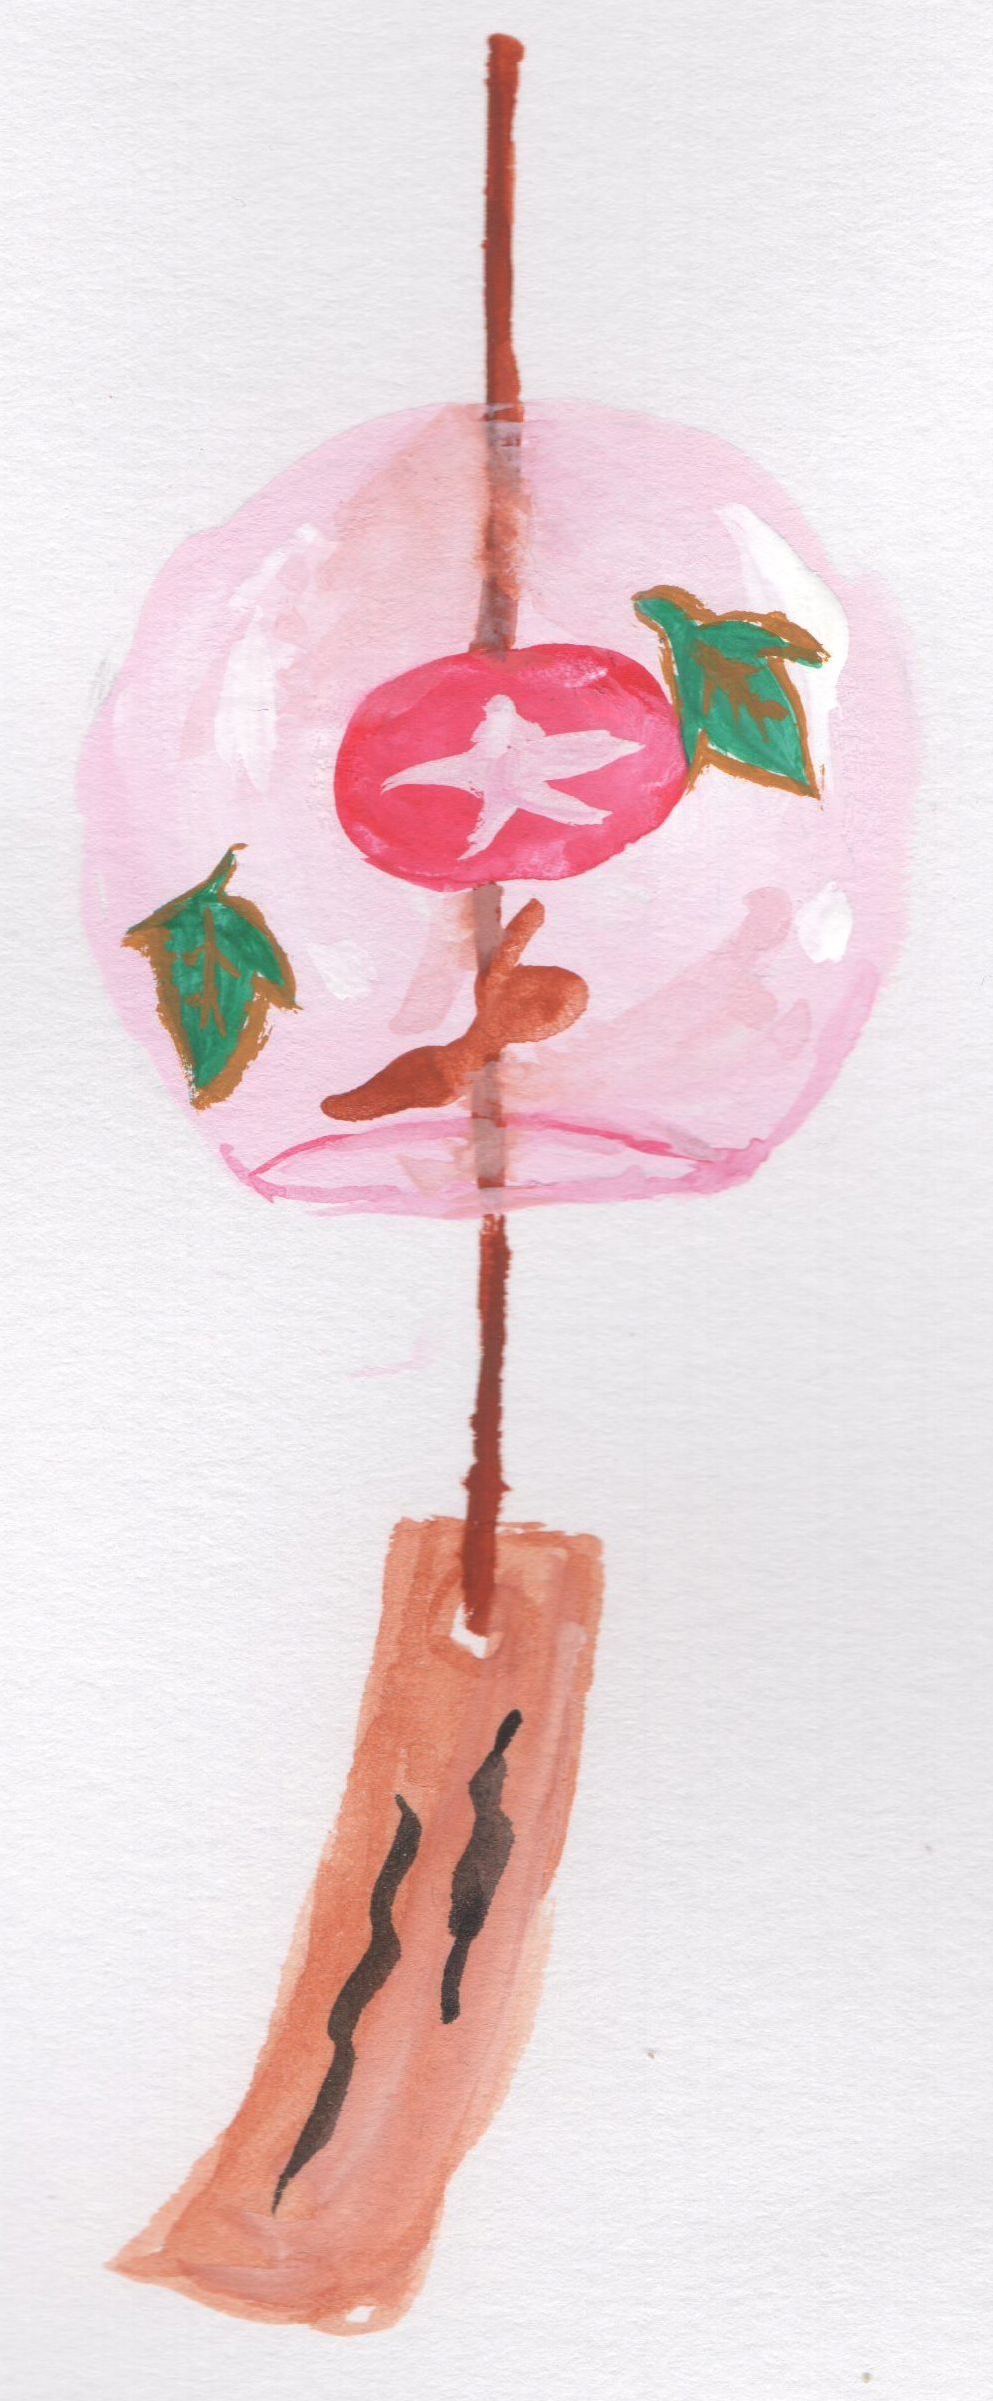 風鈴 ピンク色 水彩画のイラスト 手書きの無料イラストとフリー素材